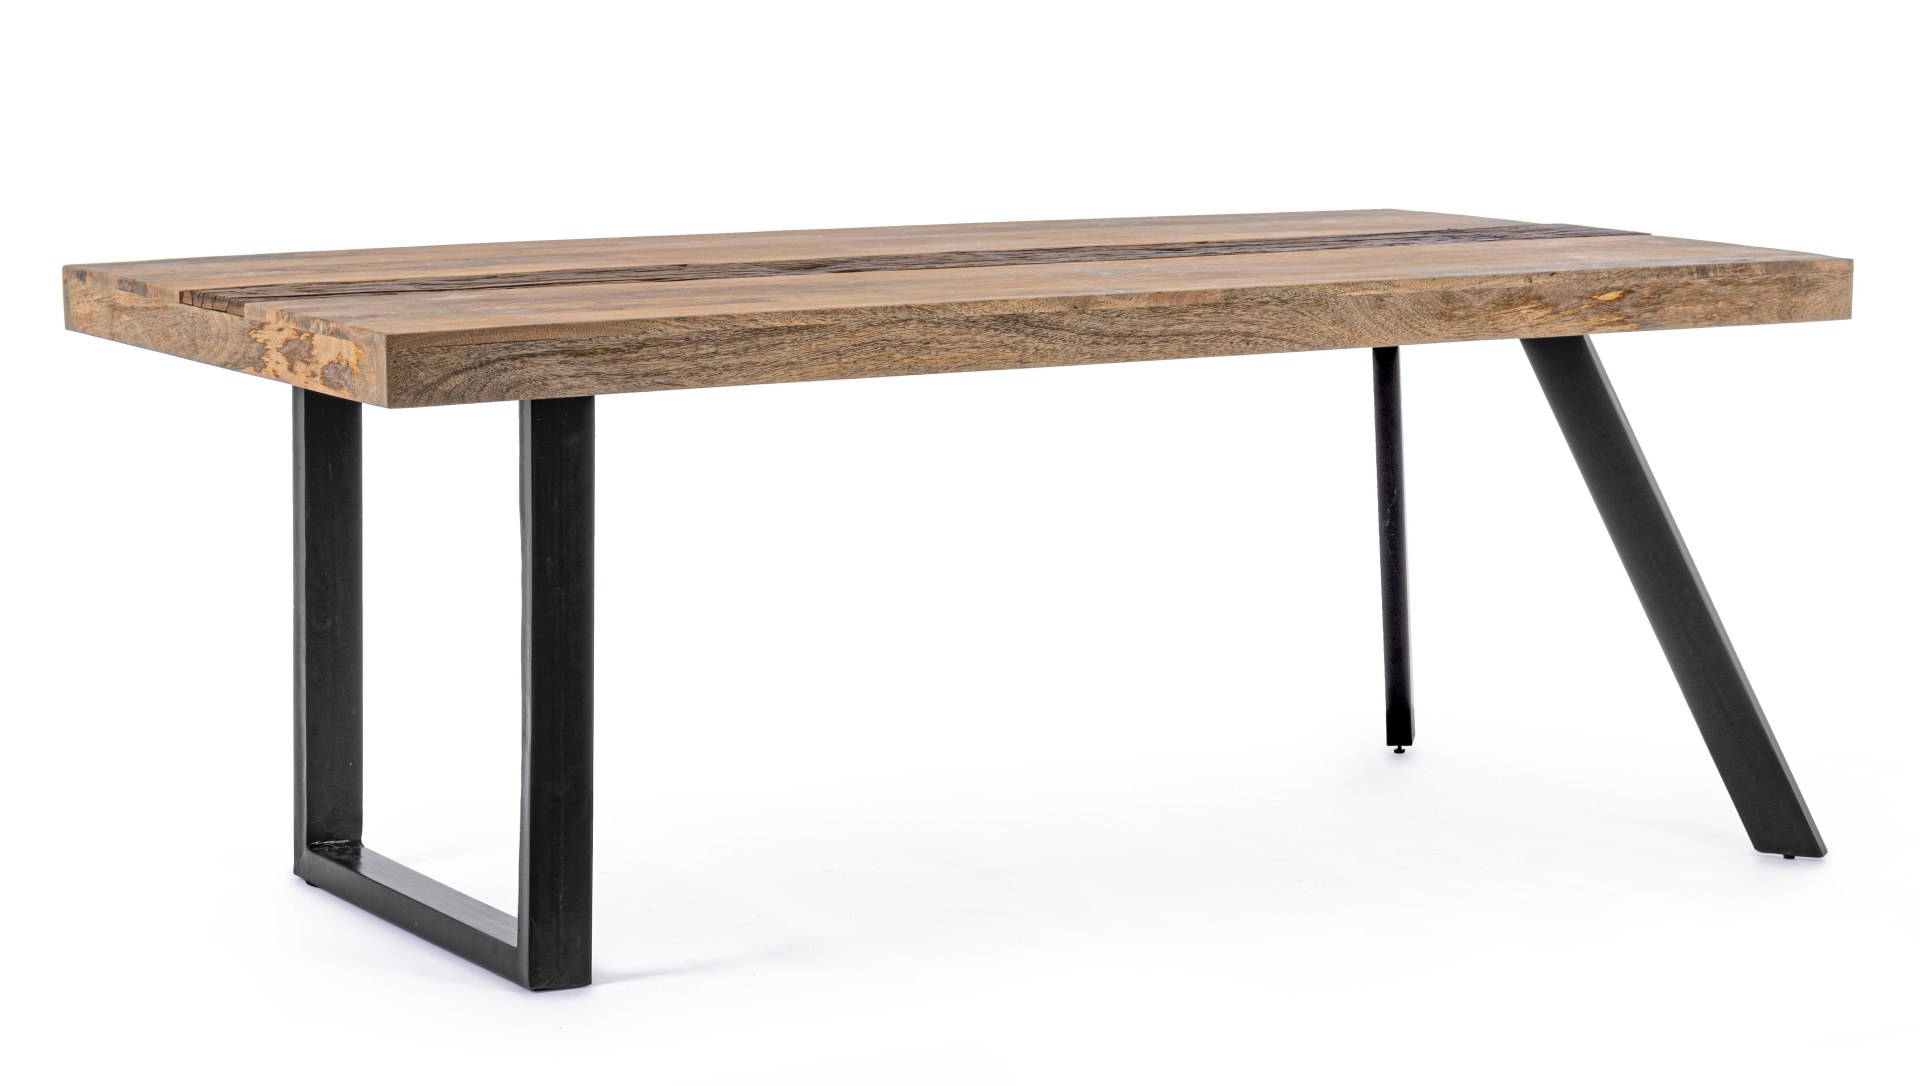 Der Esstisch Manchester überzeugt mit seinem klassischem Design gefertigt wurde er aus Mangoholz, welches einen natürlichen Farbton besitzt. Das Gestell des Tisches ist aus Metall und ist Schwarz. Der Tisch besitzt eine Breite von 200 cm.